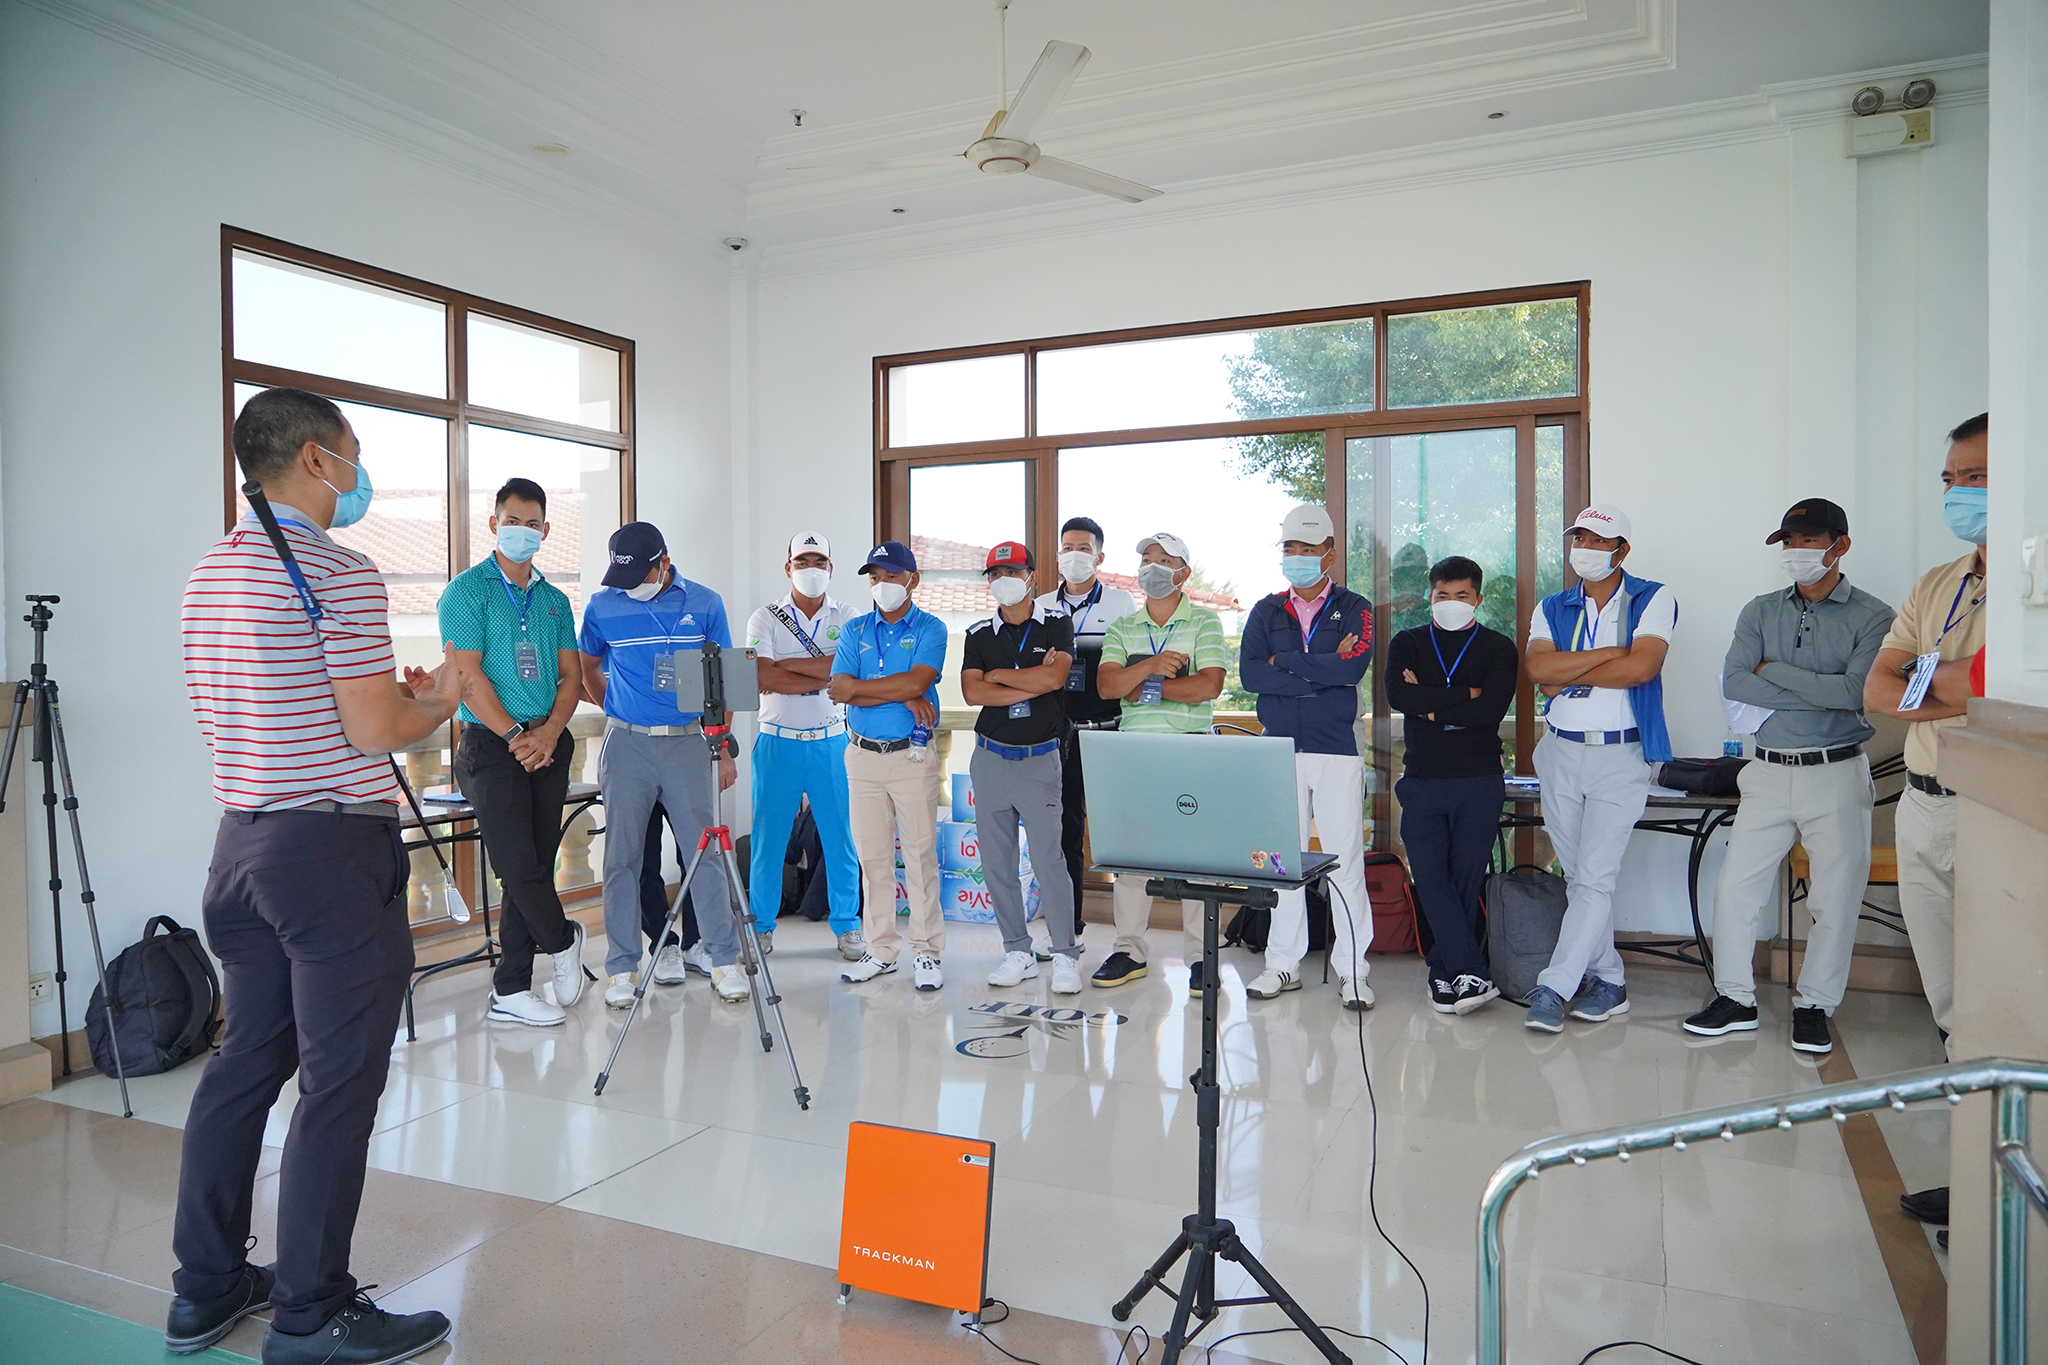 Chương trình đào tạo và chấp chứng chỉ huấn luyện viên khoá 2 được tổ chức tại Tp Hồ Chí Minh